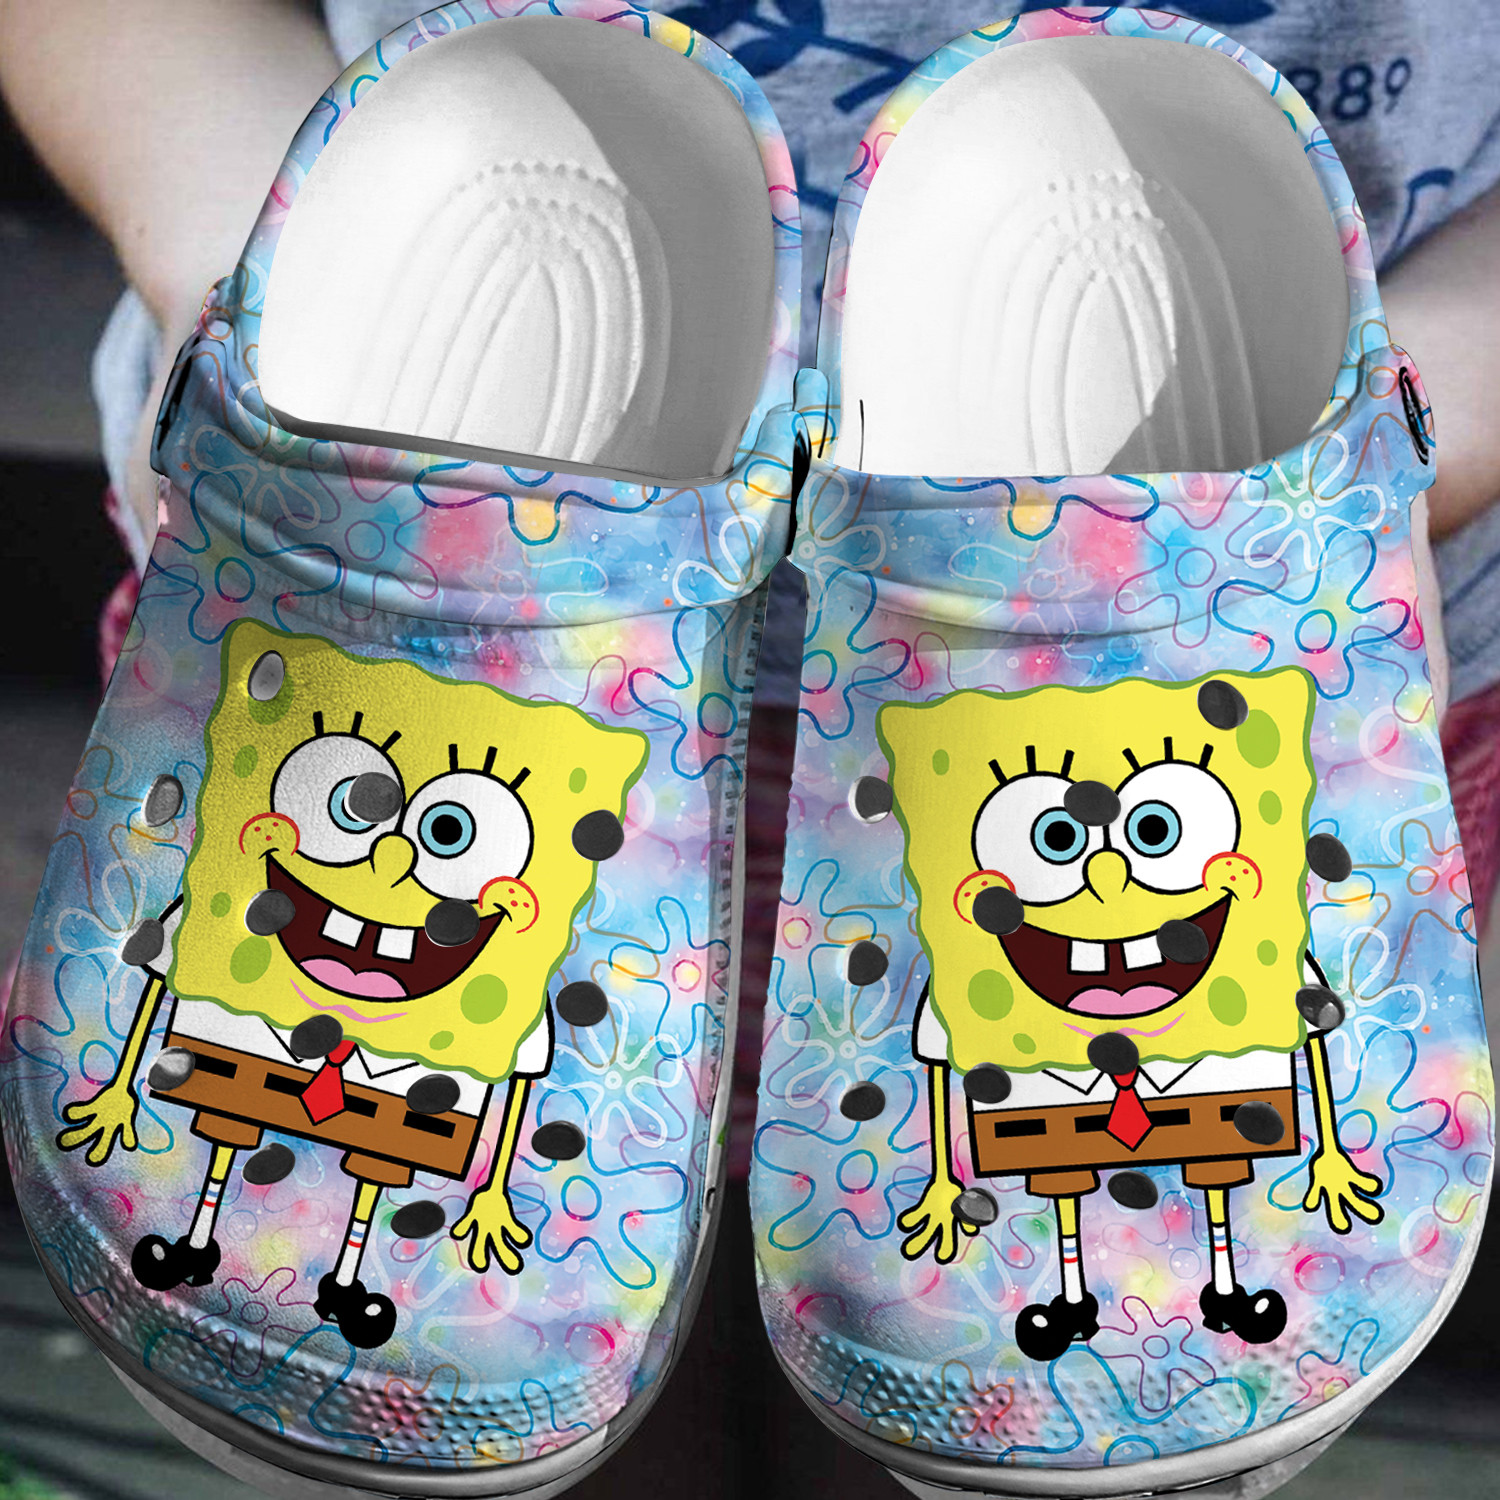 Spongebob Squarepants Crocs 3D Clog Shoes